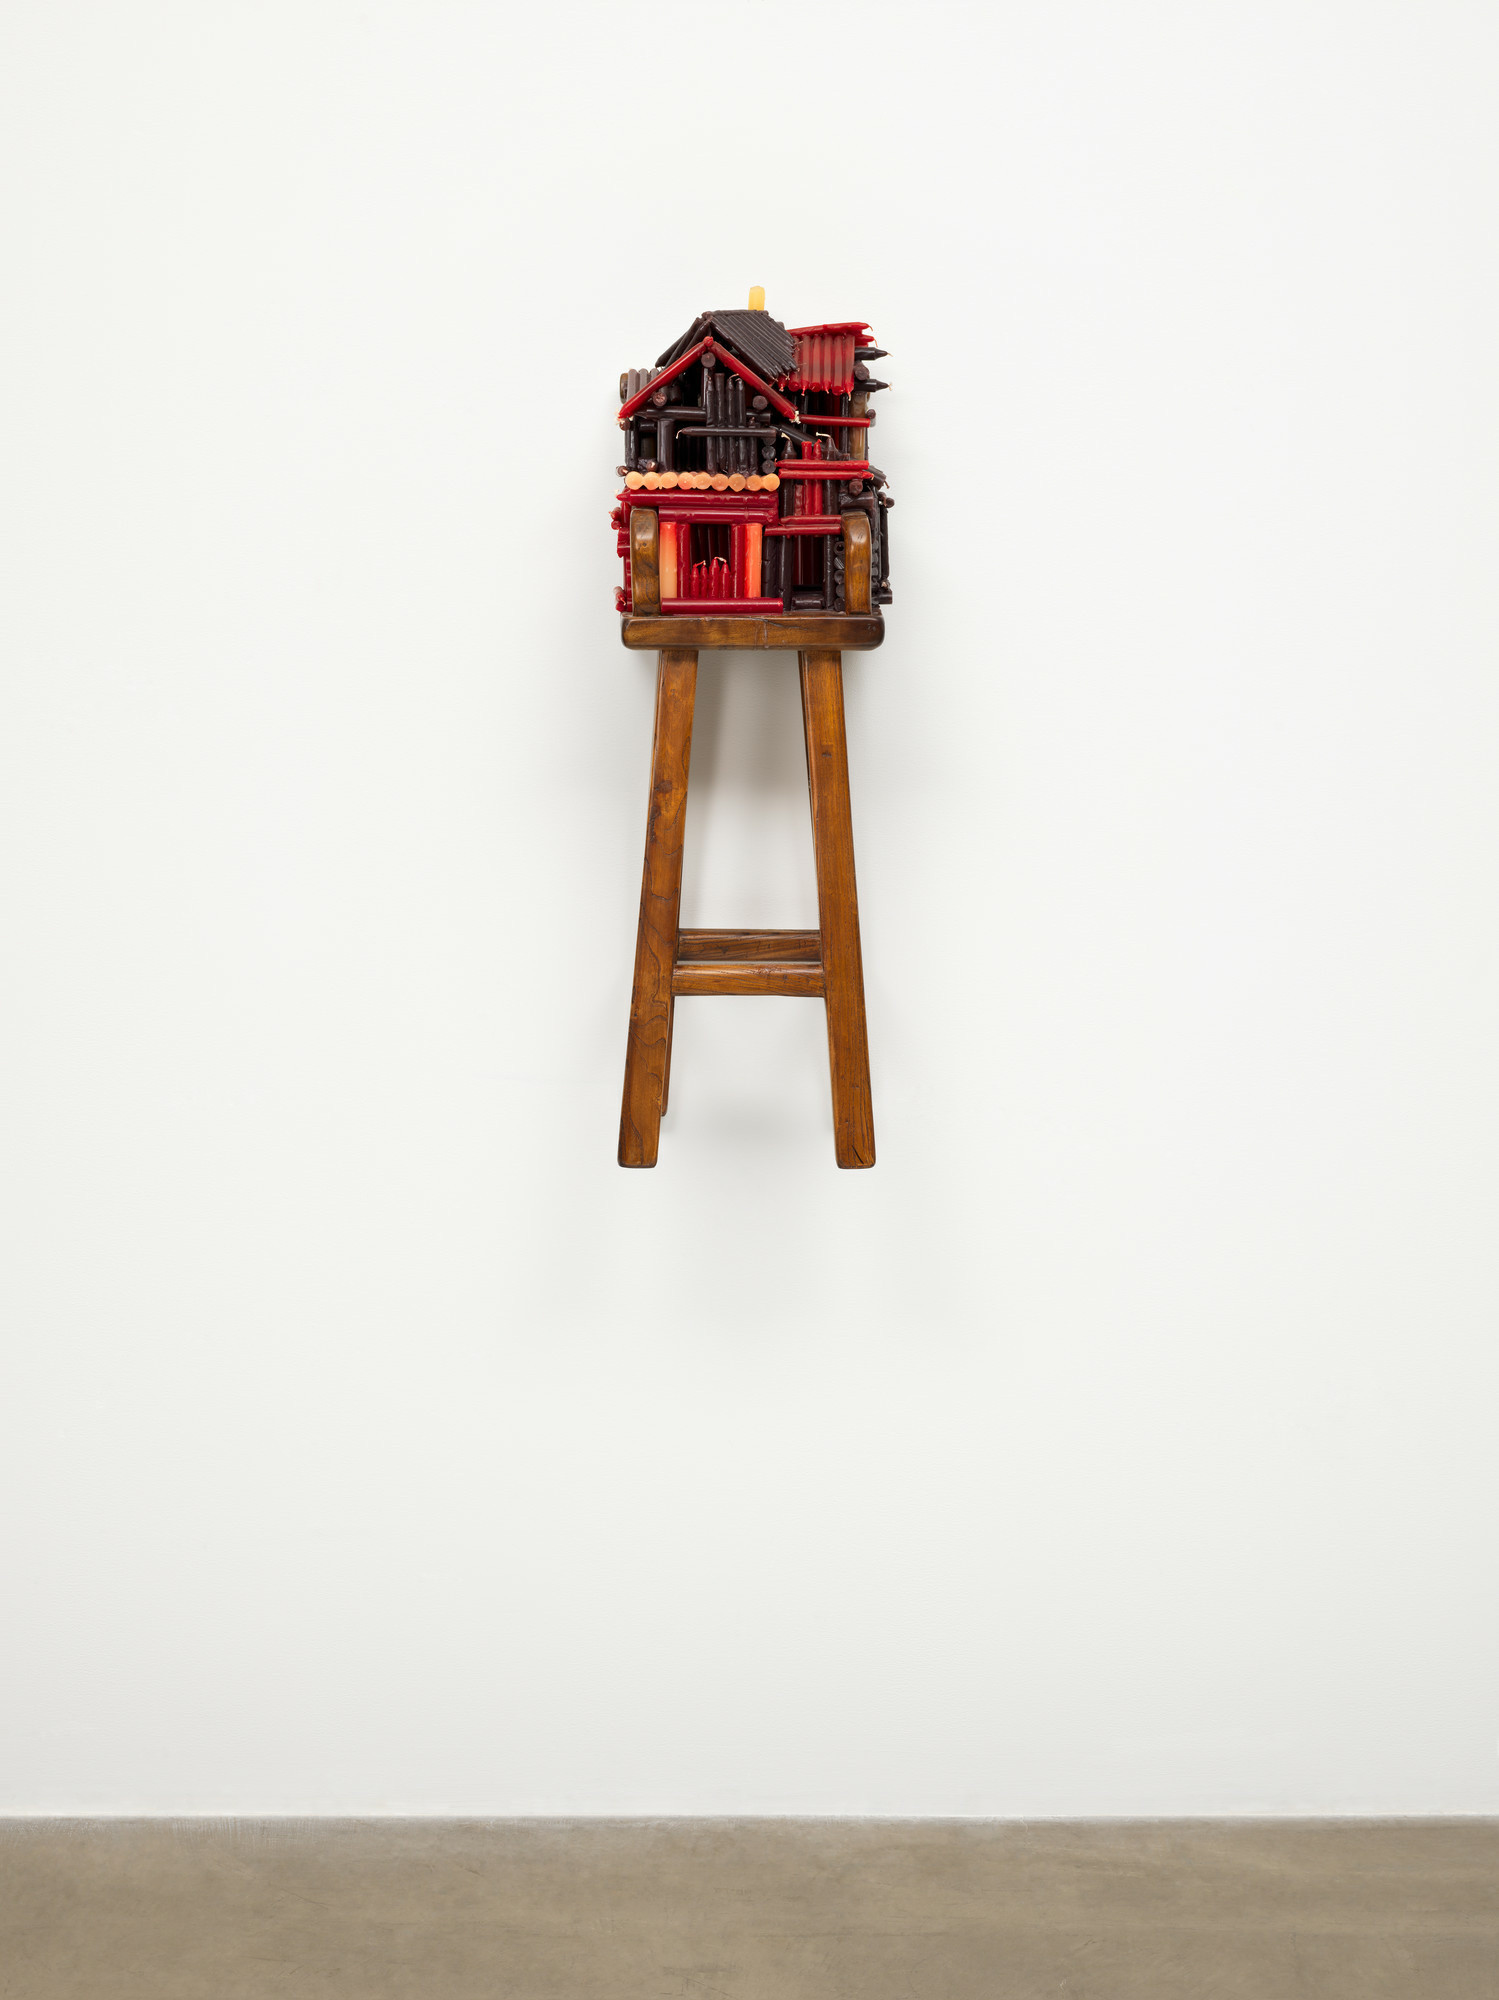 Chen Zhen. Un Village sans frontières. 2000. Silla de madera y velas. Donación de Marlene Hess y James D. Zirin. © 2021 Chen Zhen/ Artists Rights Society (ARS), Nueva York